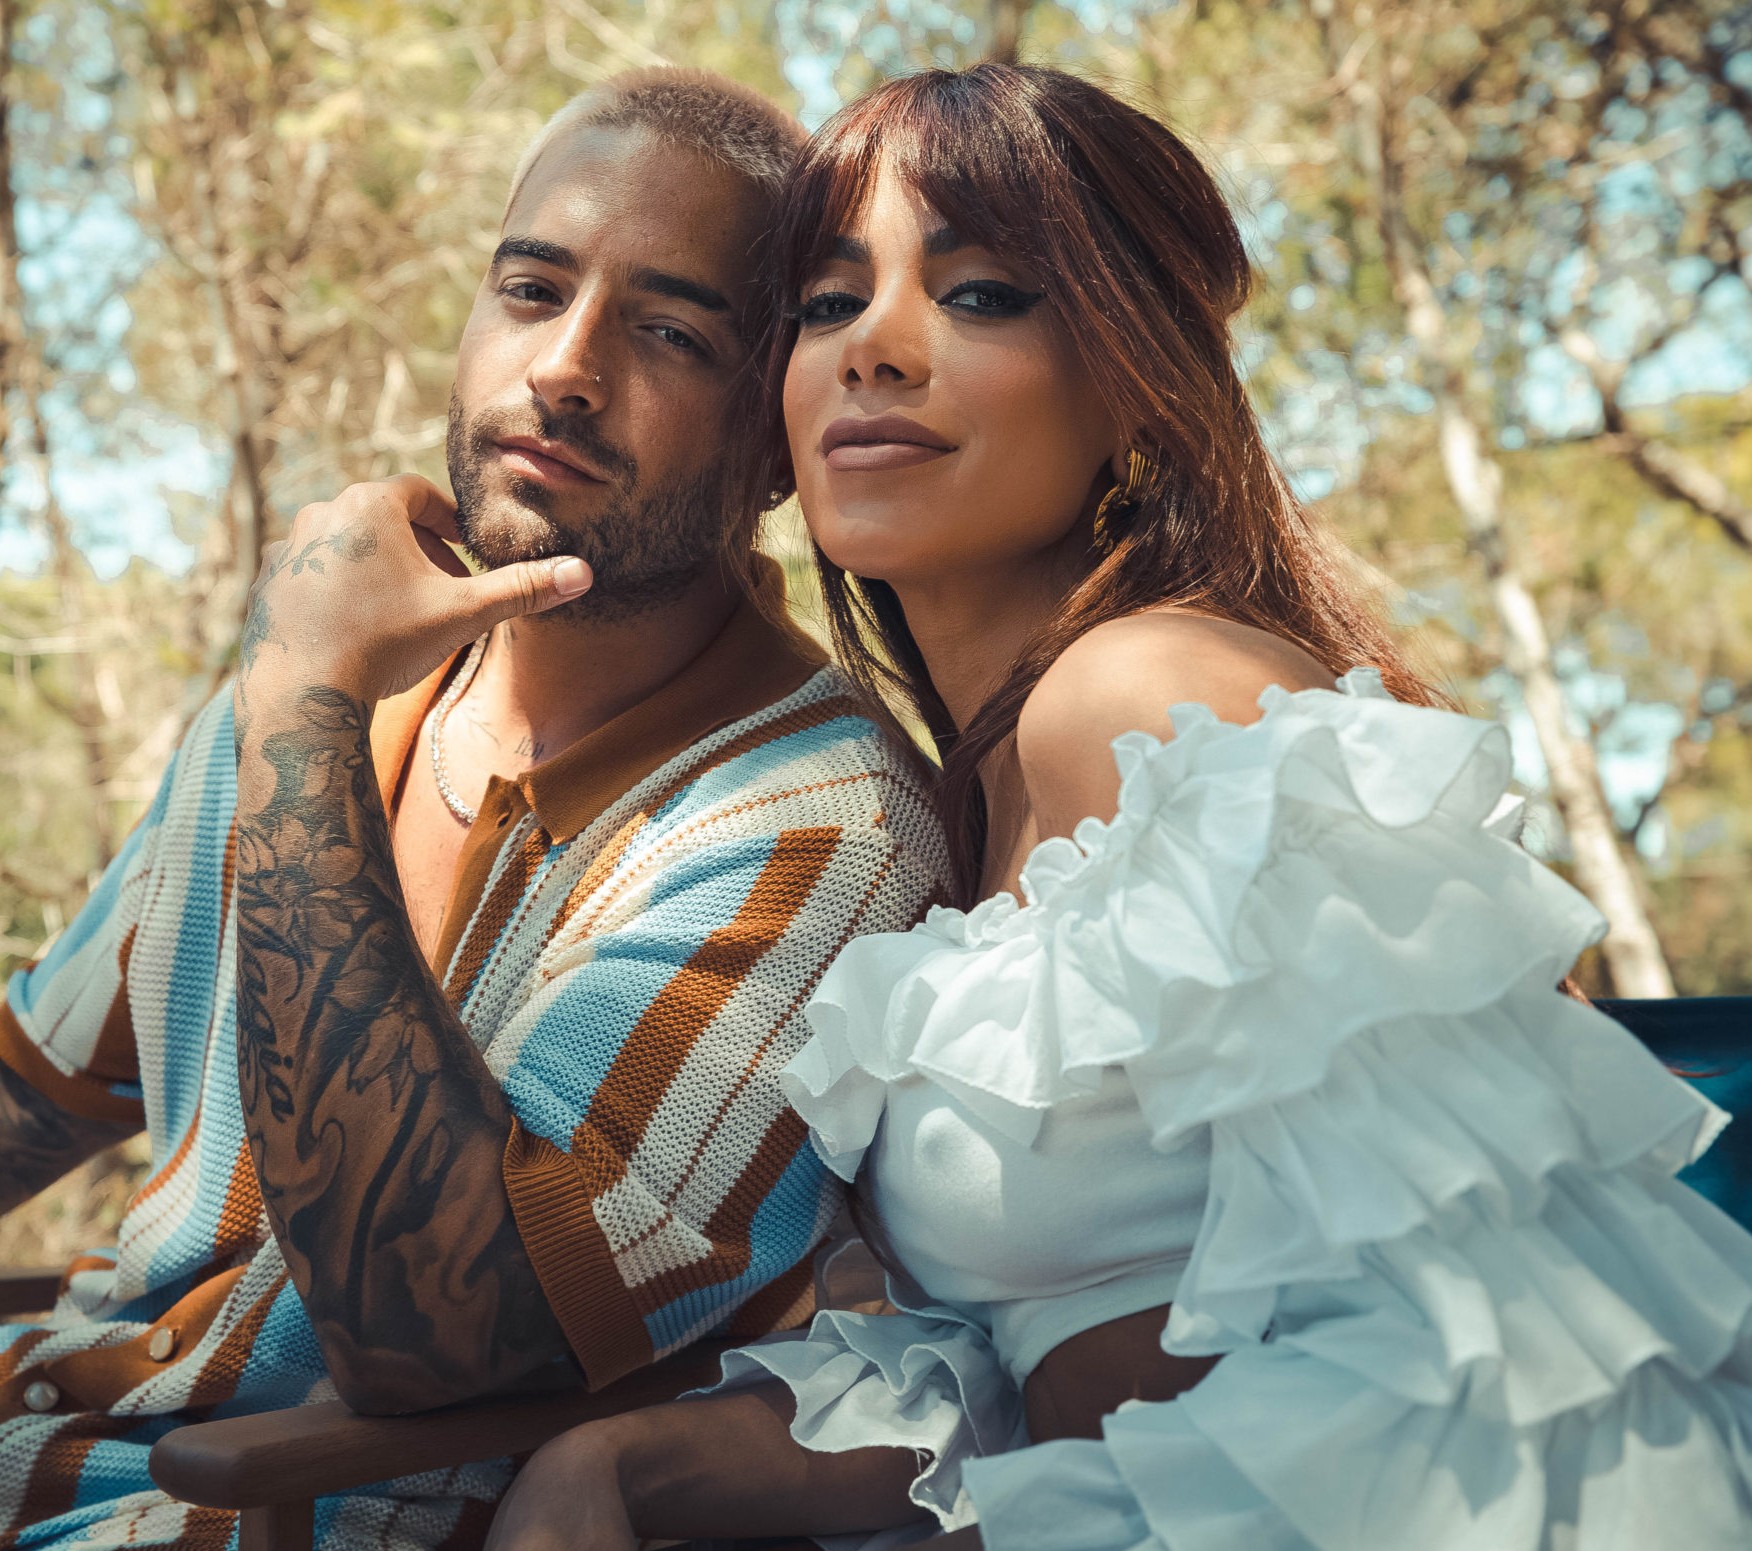 Anitta reitera química com Maluma ao som do romantismo pop e sensual do reggaeton 'El que espera'